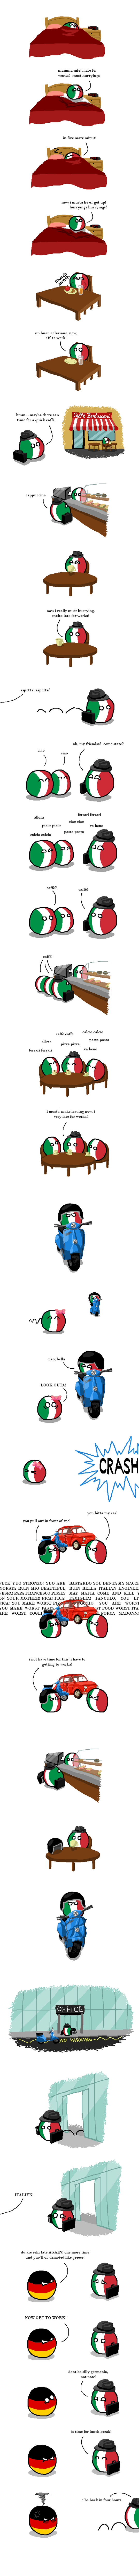 Accurate description of the average Italian